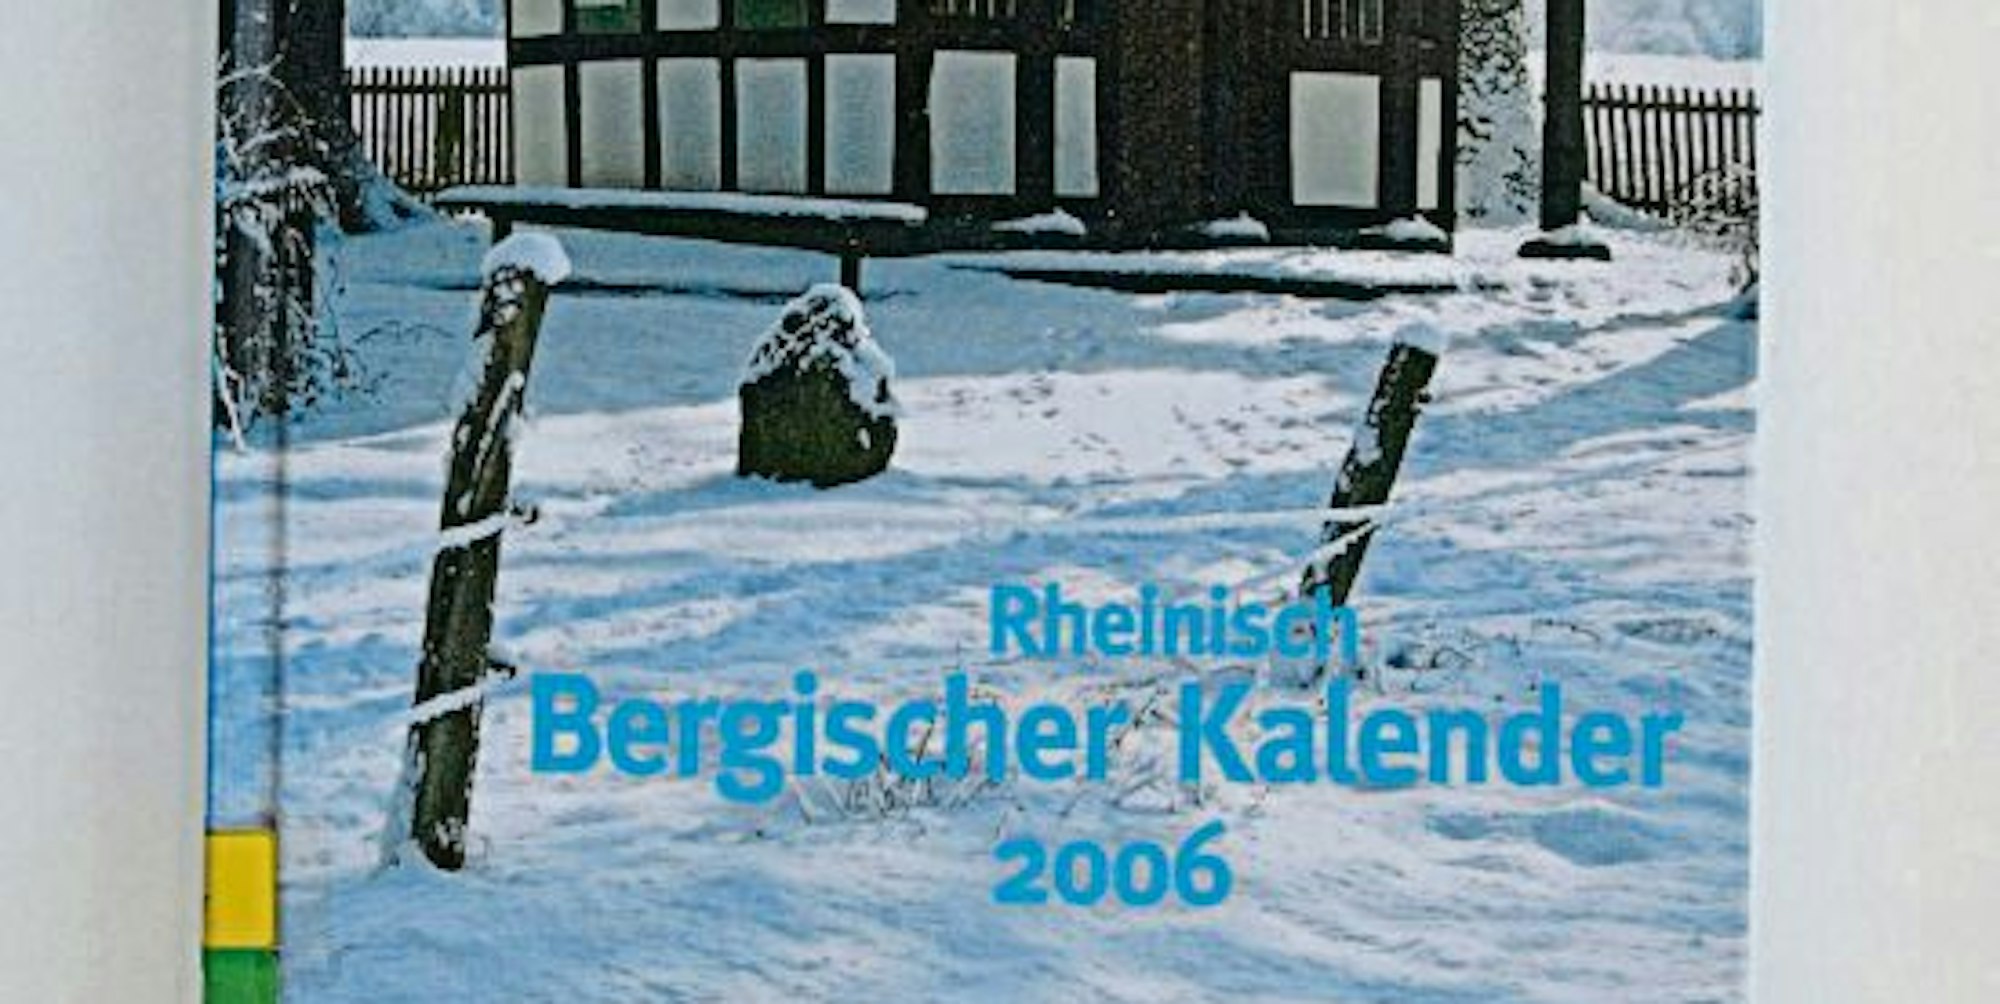 Der Rheinisch-Bergische Kalender zählt 90 Motive (zehn Ausgaben sind ausgefallen), und alle haben ihren Bezug zum Bergischen.